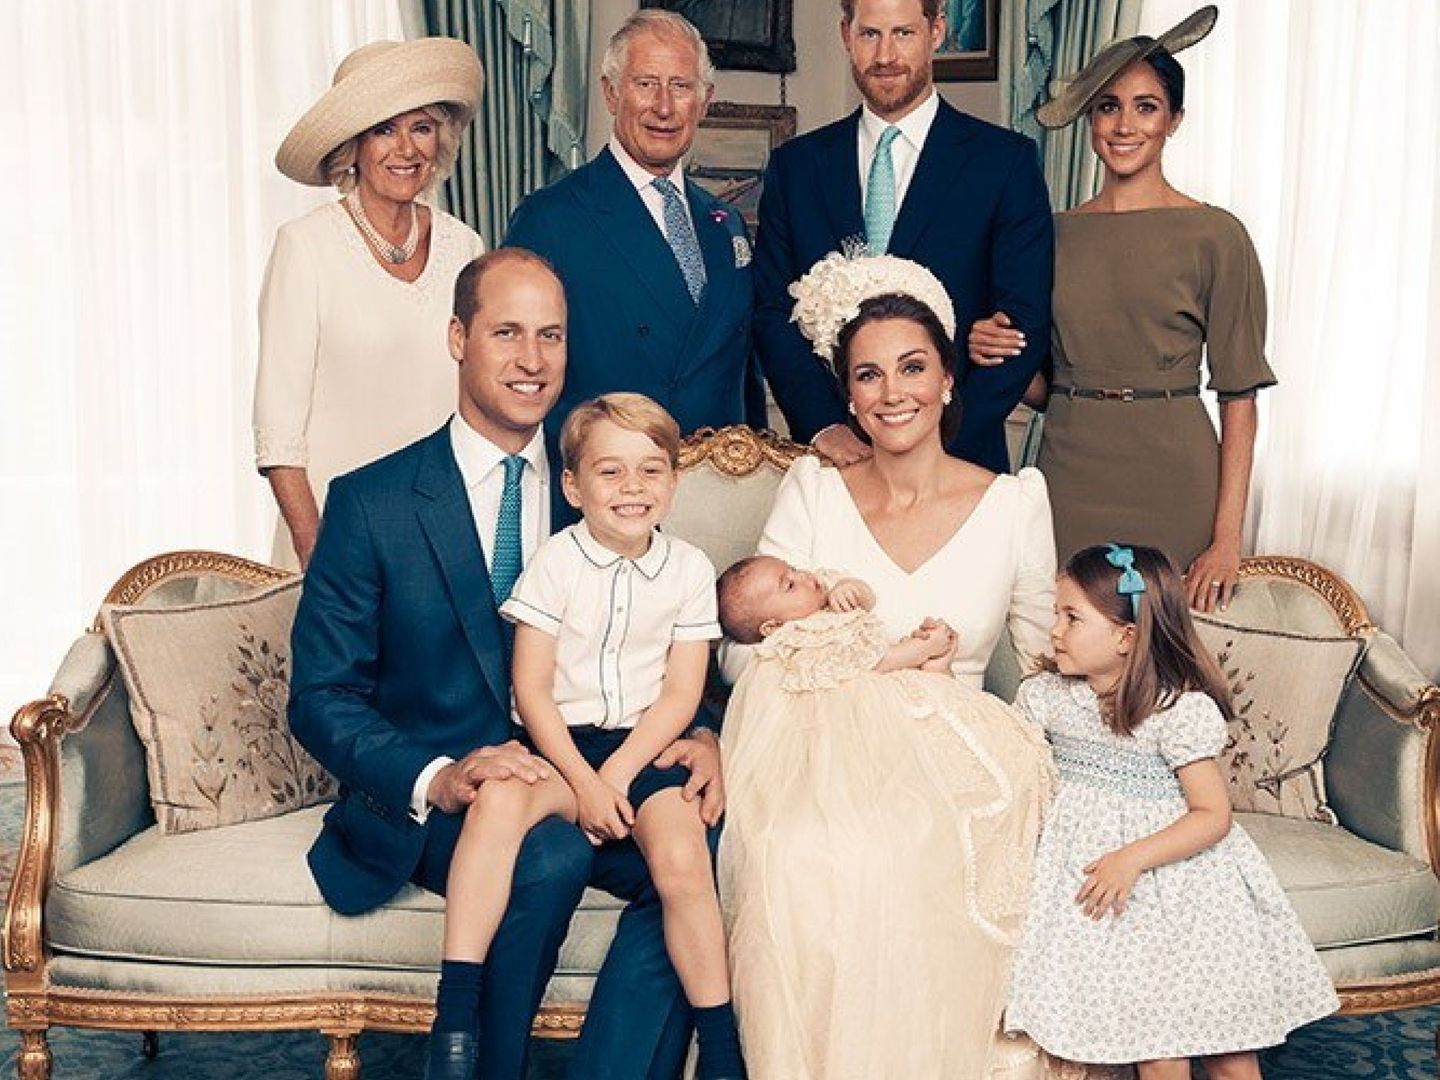 Foto oficial cedida por los duques de Cambridge en 2018. Camilla se situó a la izquierda. (EFE)